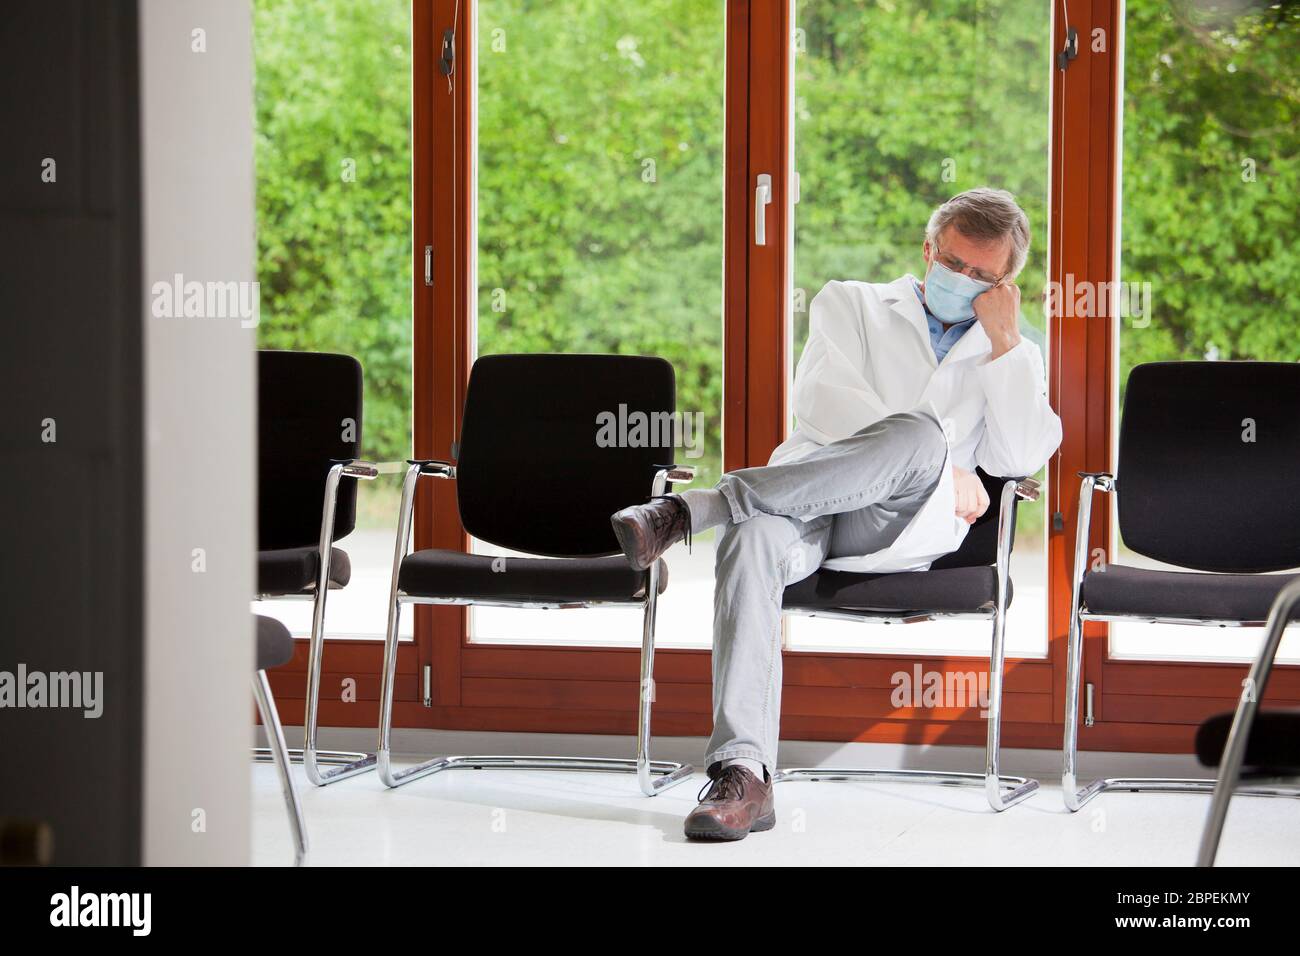 Überarbeiteter Arzt mit Gesichtsmaske, der in einem Stuhl in einem leeren Wartezimmer schläft - grüner Hintergrund mit Pflanzen Stockfoto